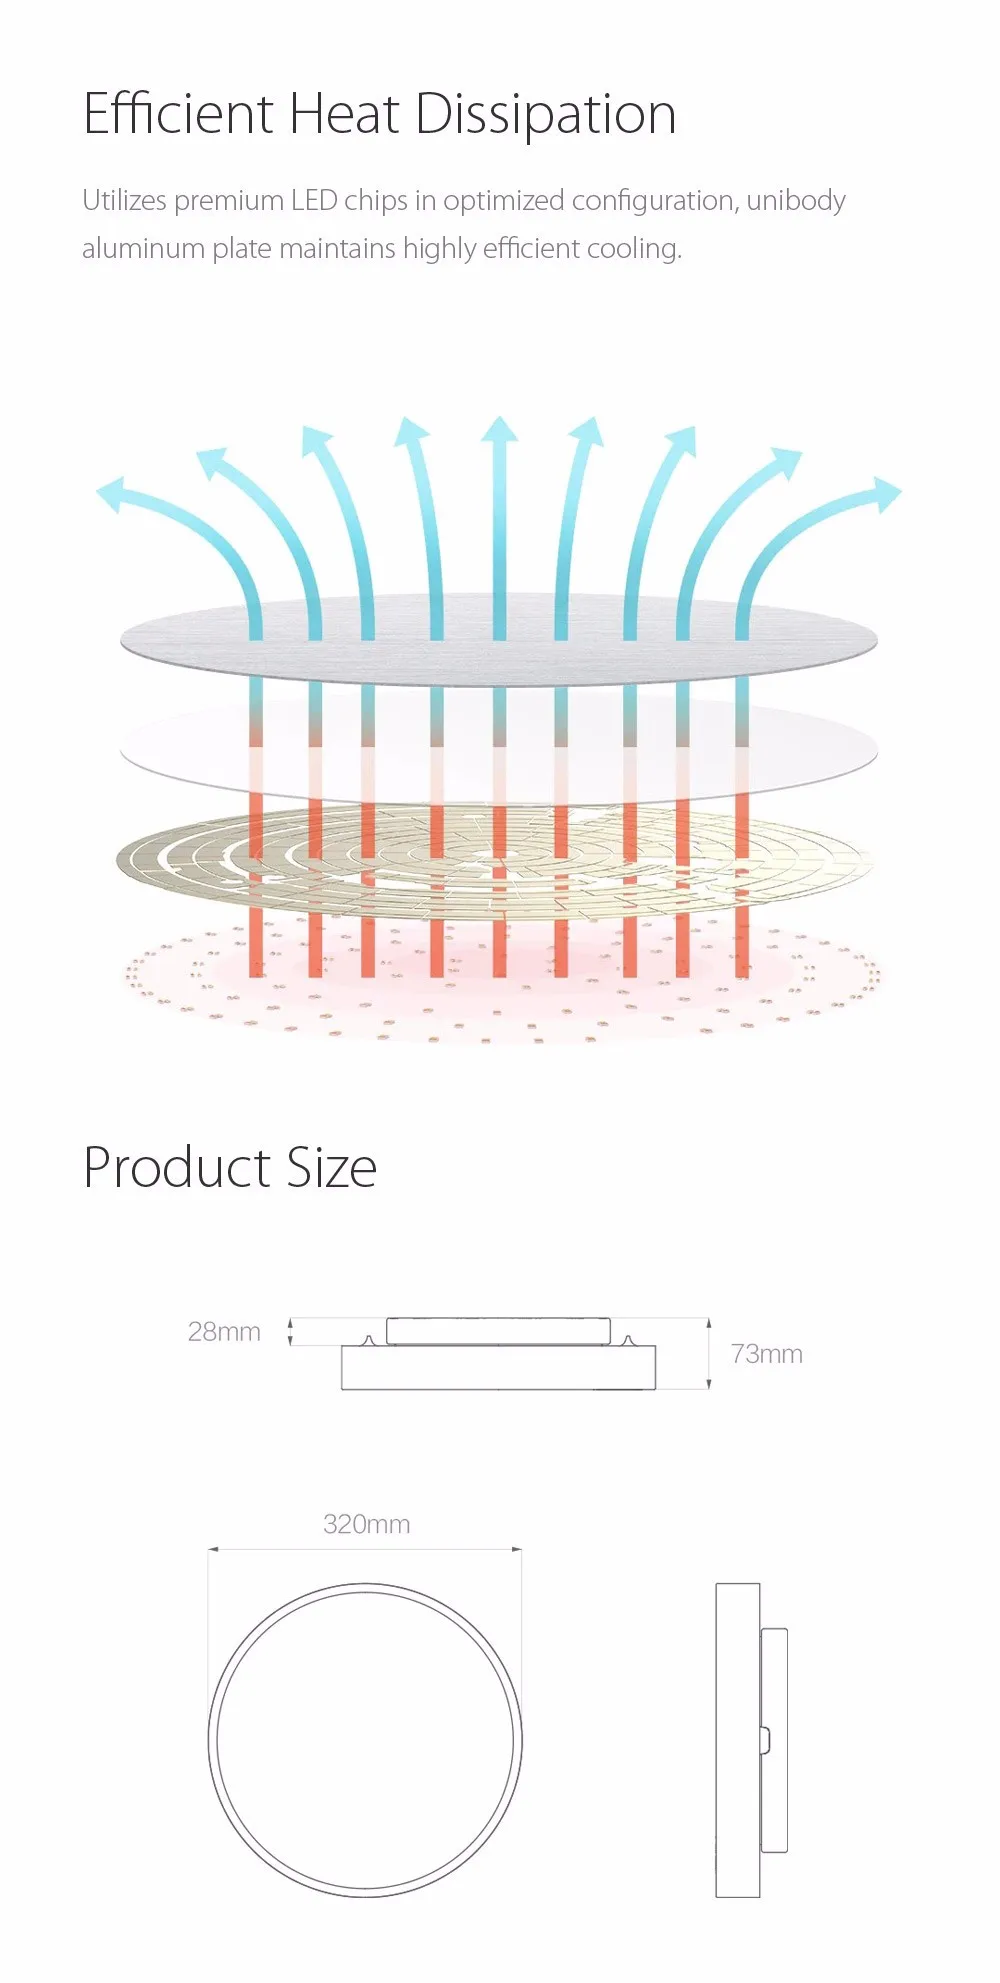 Новая версия Xiaomi Yeelight YLXD41YL умный светодиодный потолочный светильник приложение голосовое дистанционное управление IP60 Пылезащитная работа с Apple Homekit